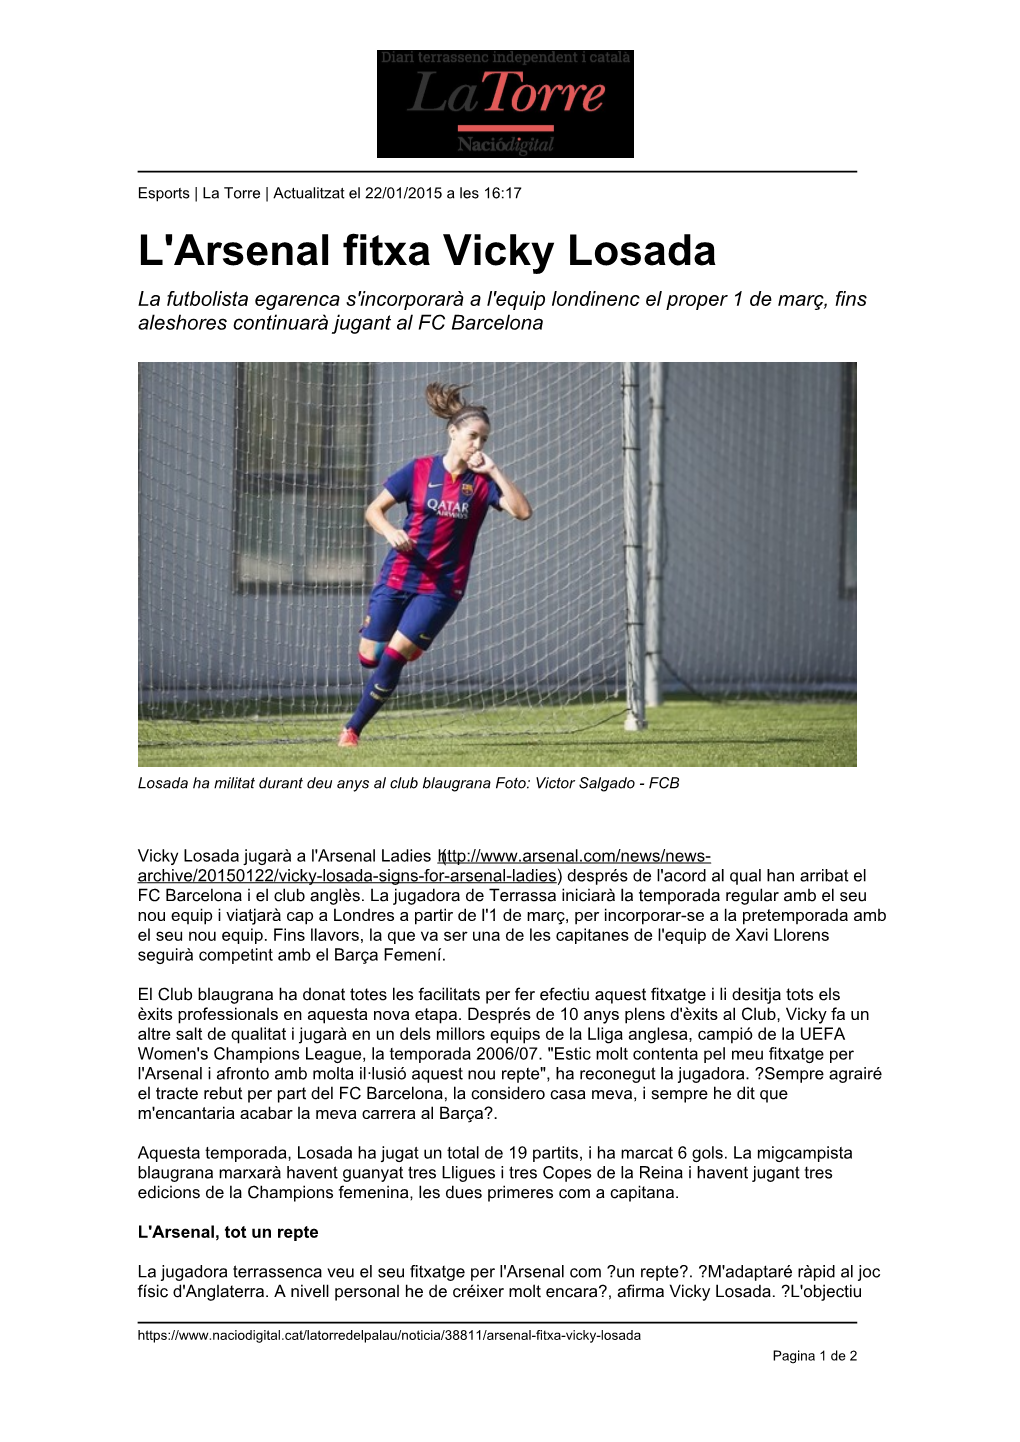 L'arsenal Fitxa Vicky Losada La Futbolista Egarenca S'incorporarà a L'equip Londinenc El Proper 1 De Març, Fins Aleshores Continuarà Jugant Al FC Barcelona